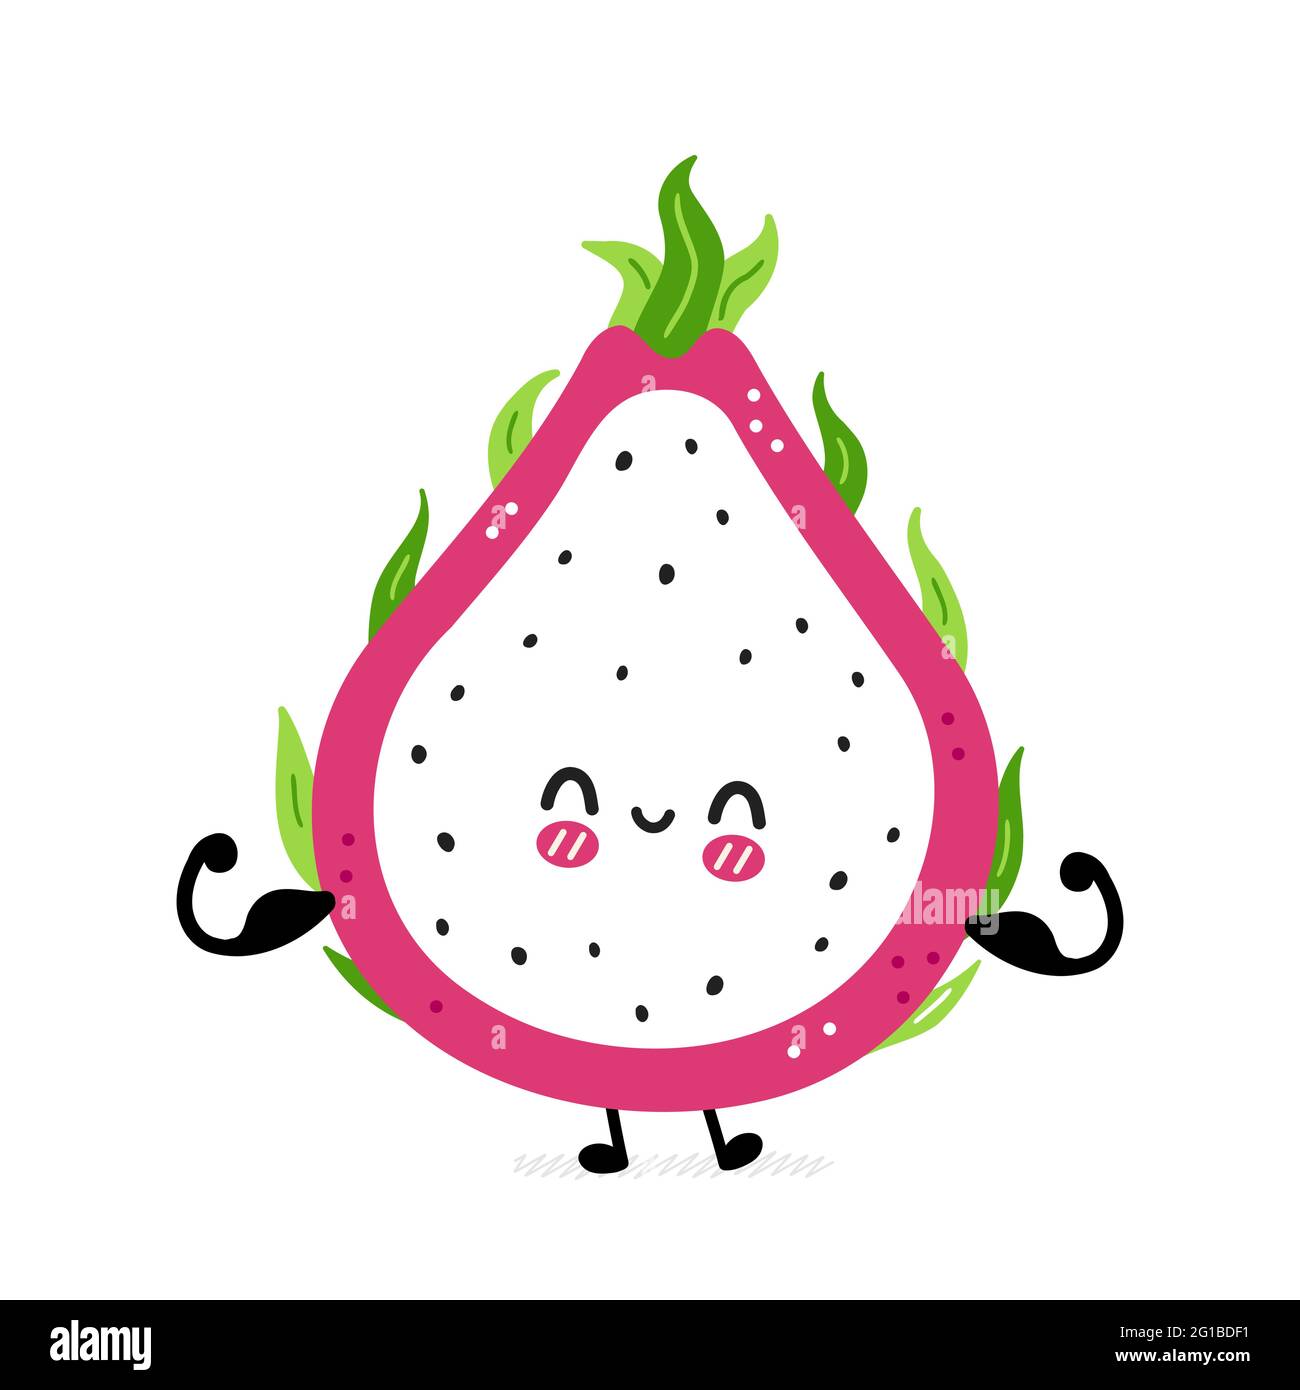 Nette lustige Drachen Obst zeigen Muskel. Vektor Hand gezeichnet Cartoon kawaii Charakter Illustration Symbol. Isoliert auf weißem Hintergrund. Drachenfrucht, exotisches Food-Charakter-Konzept Stock Vektor